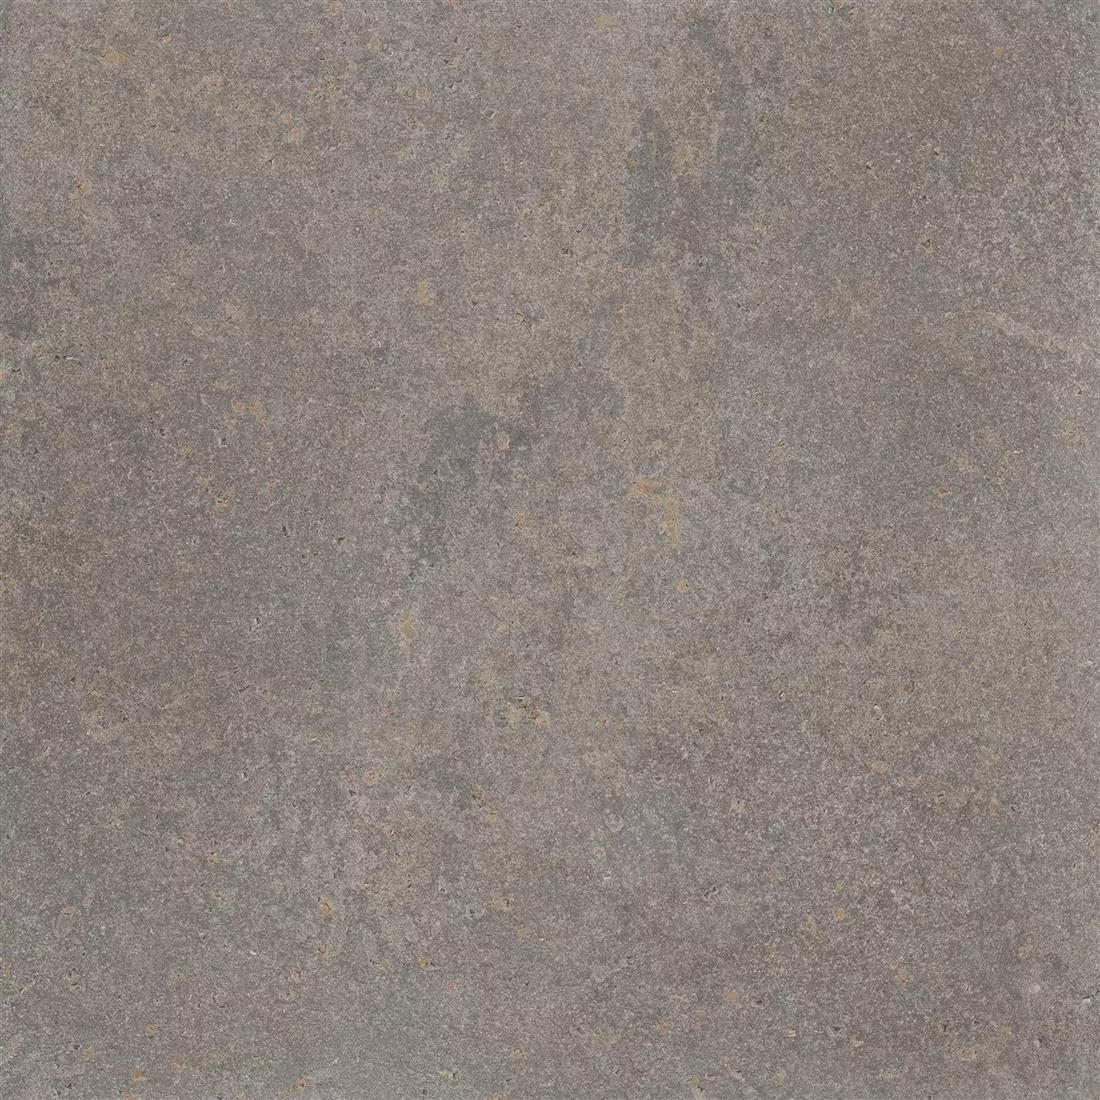 Ladrilhos Olhar de Pedra Horizon Marrom 60x60cm